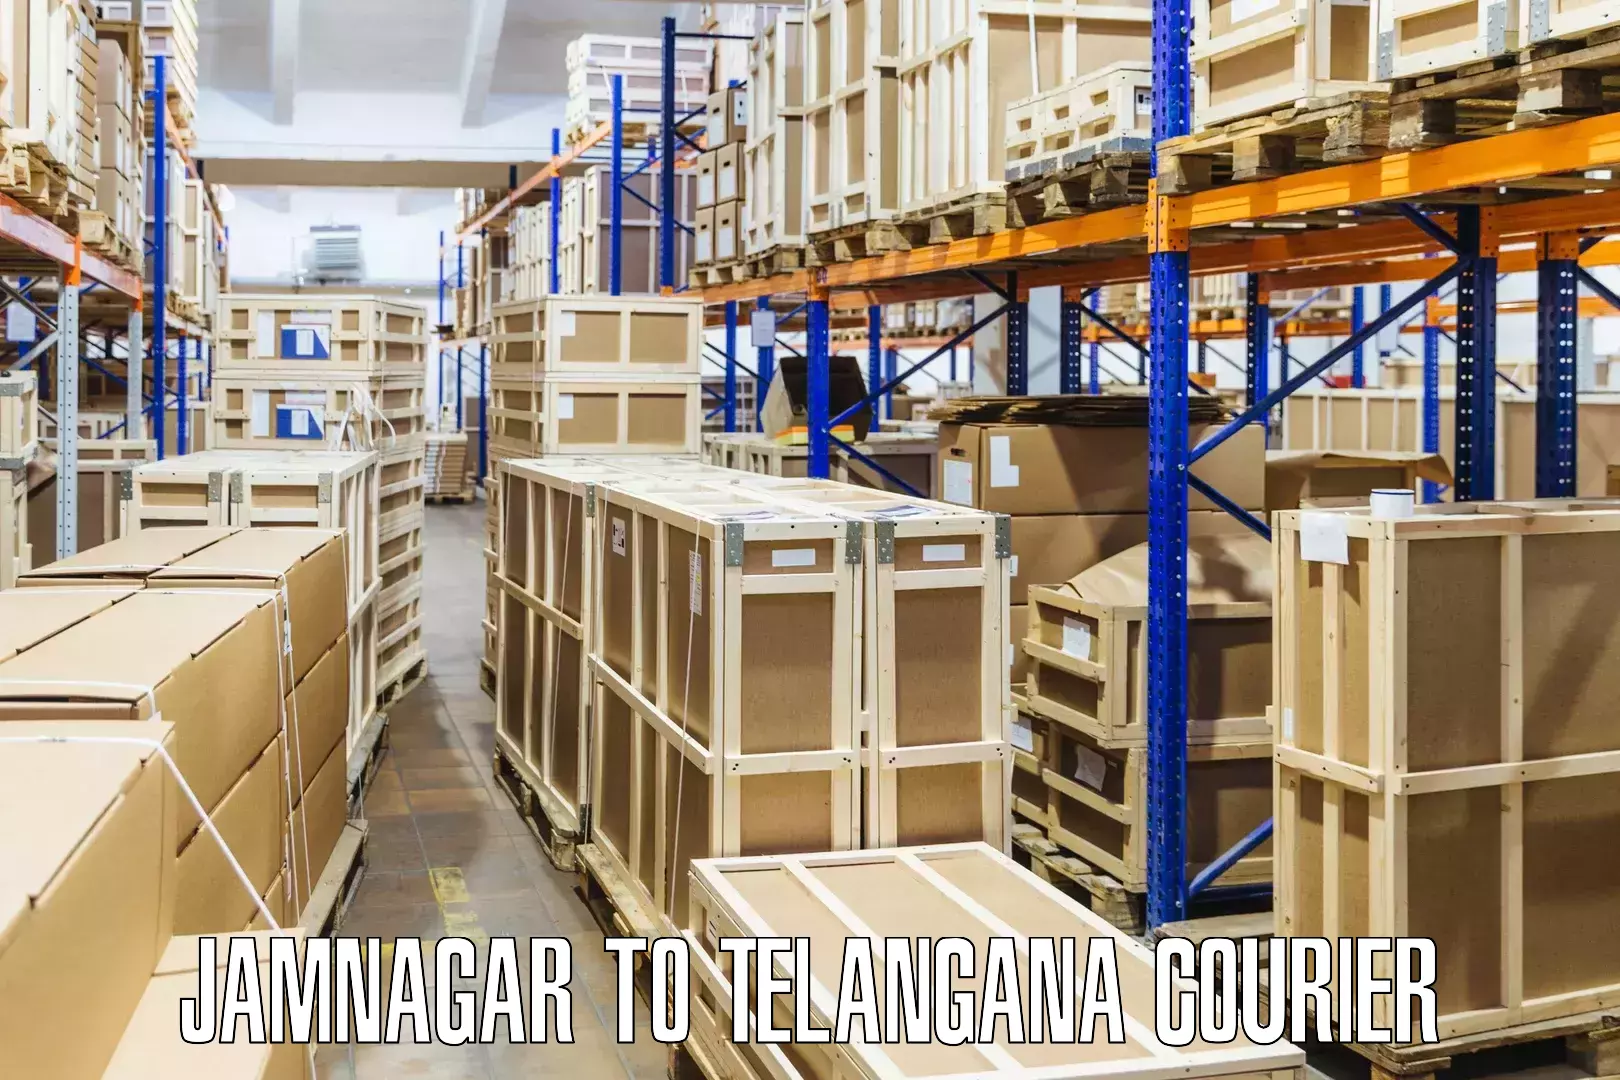 Multi-service courier options Jamnagar to Telangana